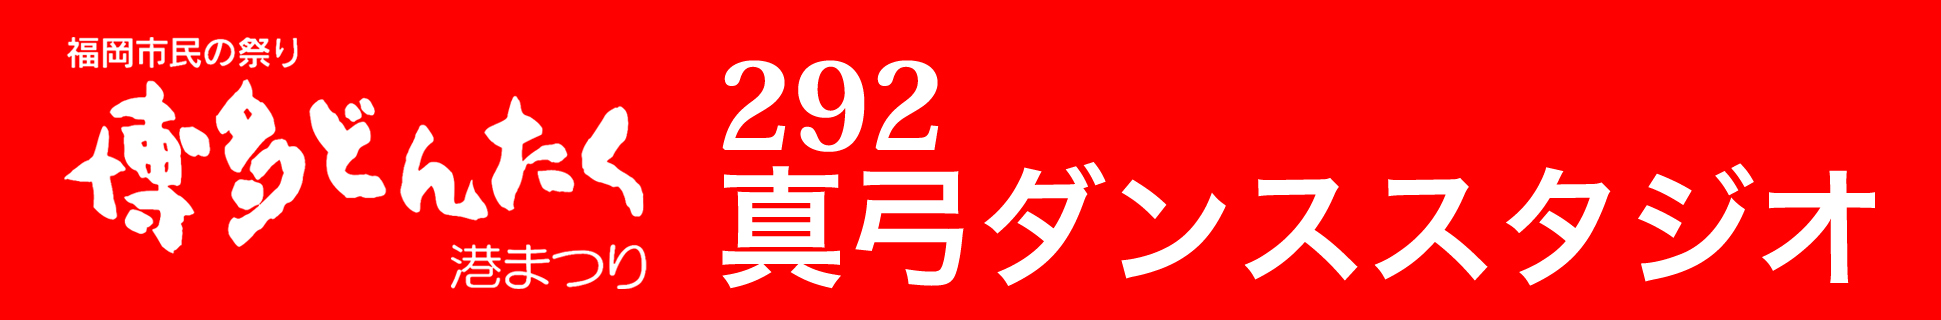 292真弓ダンススタジオどんたく隊バナー